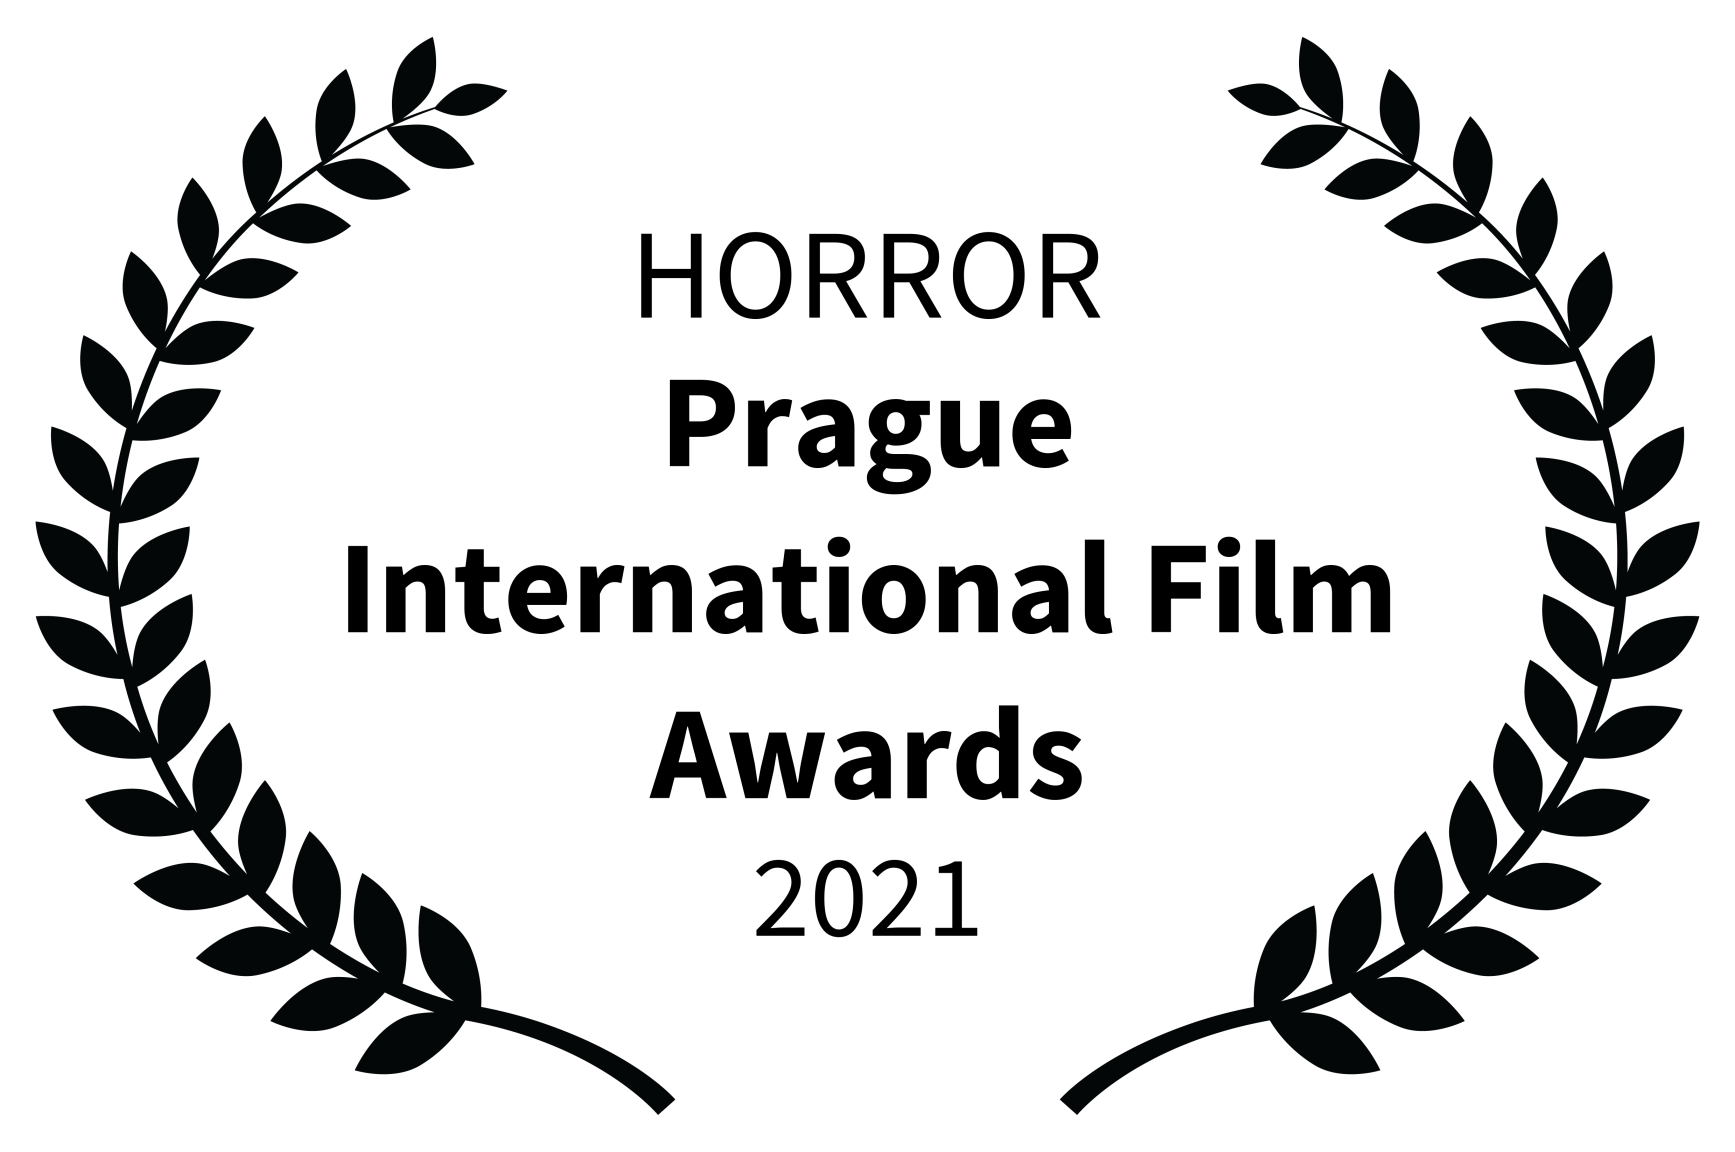 Prix Horror au concours Prague International Film Awards